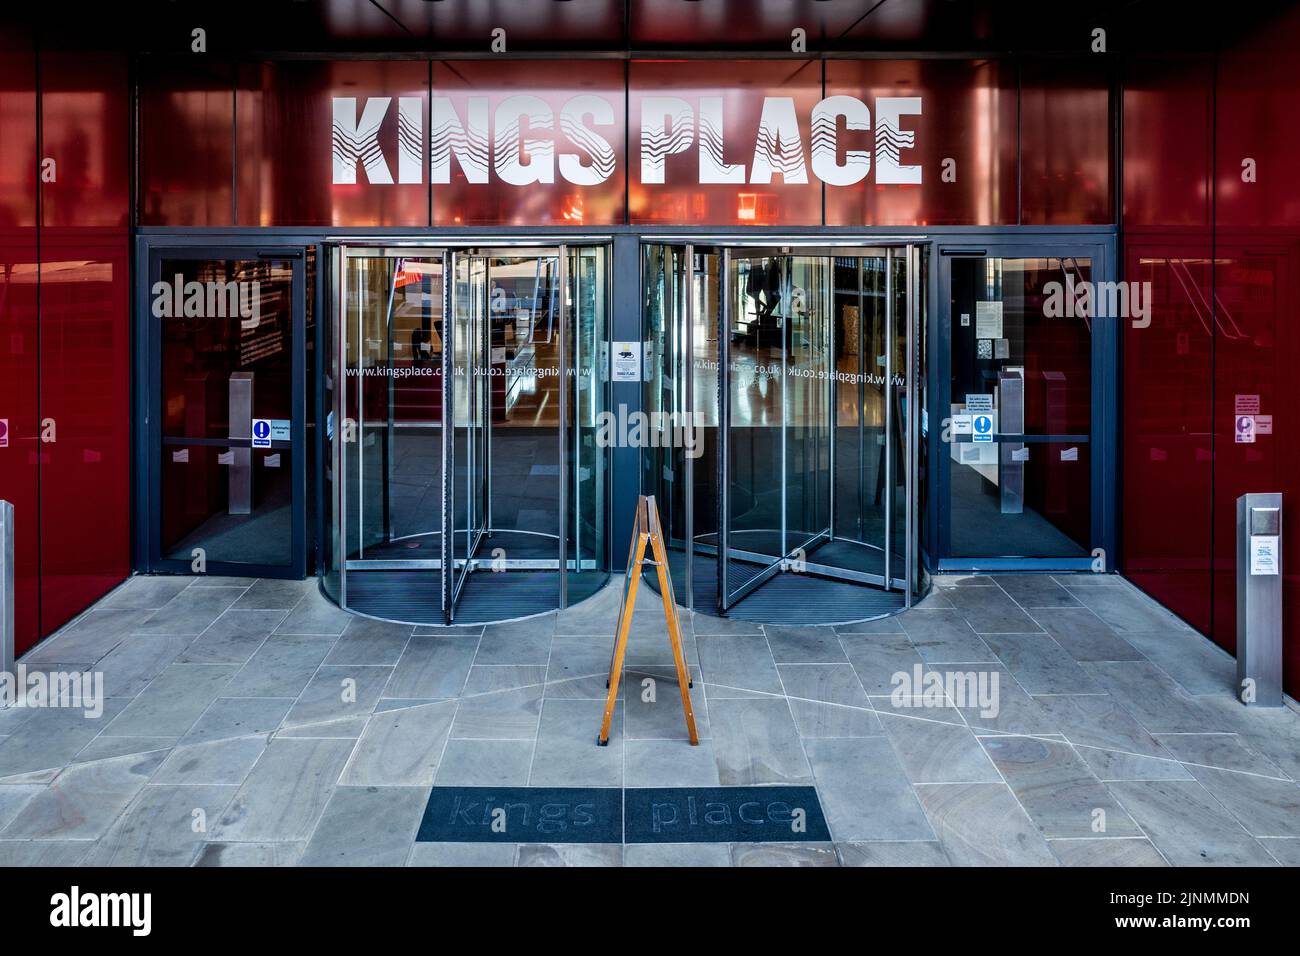 Entrada a Kings Place London - Kings Place contiene espacios para conciertos, galerías de arte y oficinas comerciales. Arquitecto Dixon Jones 2008. Foto de stock